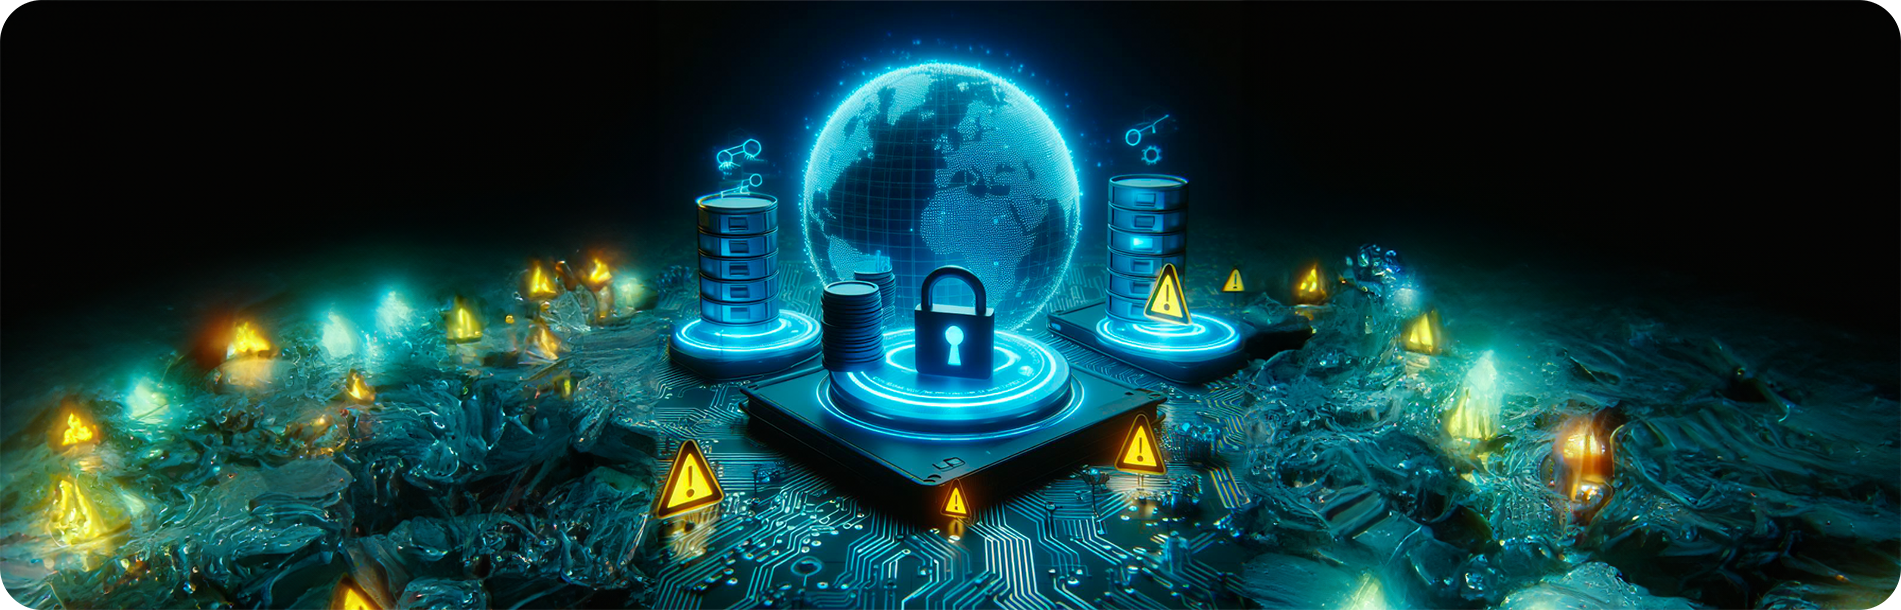 Imagem de servidores e globo, com elementos de segurança e alertas através do símbolo de alerta. com coloração escura e azul.